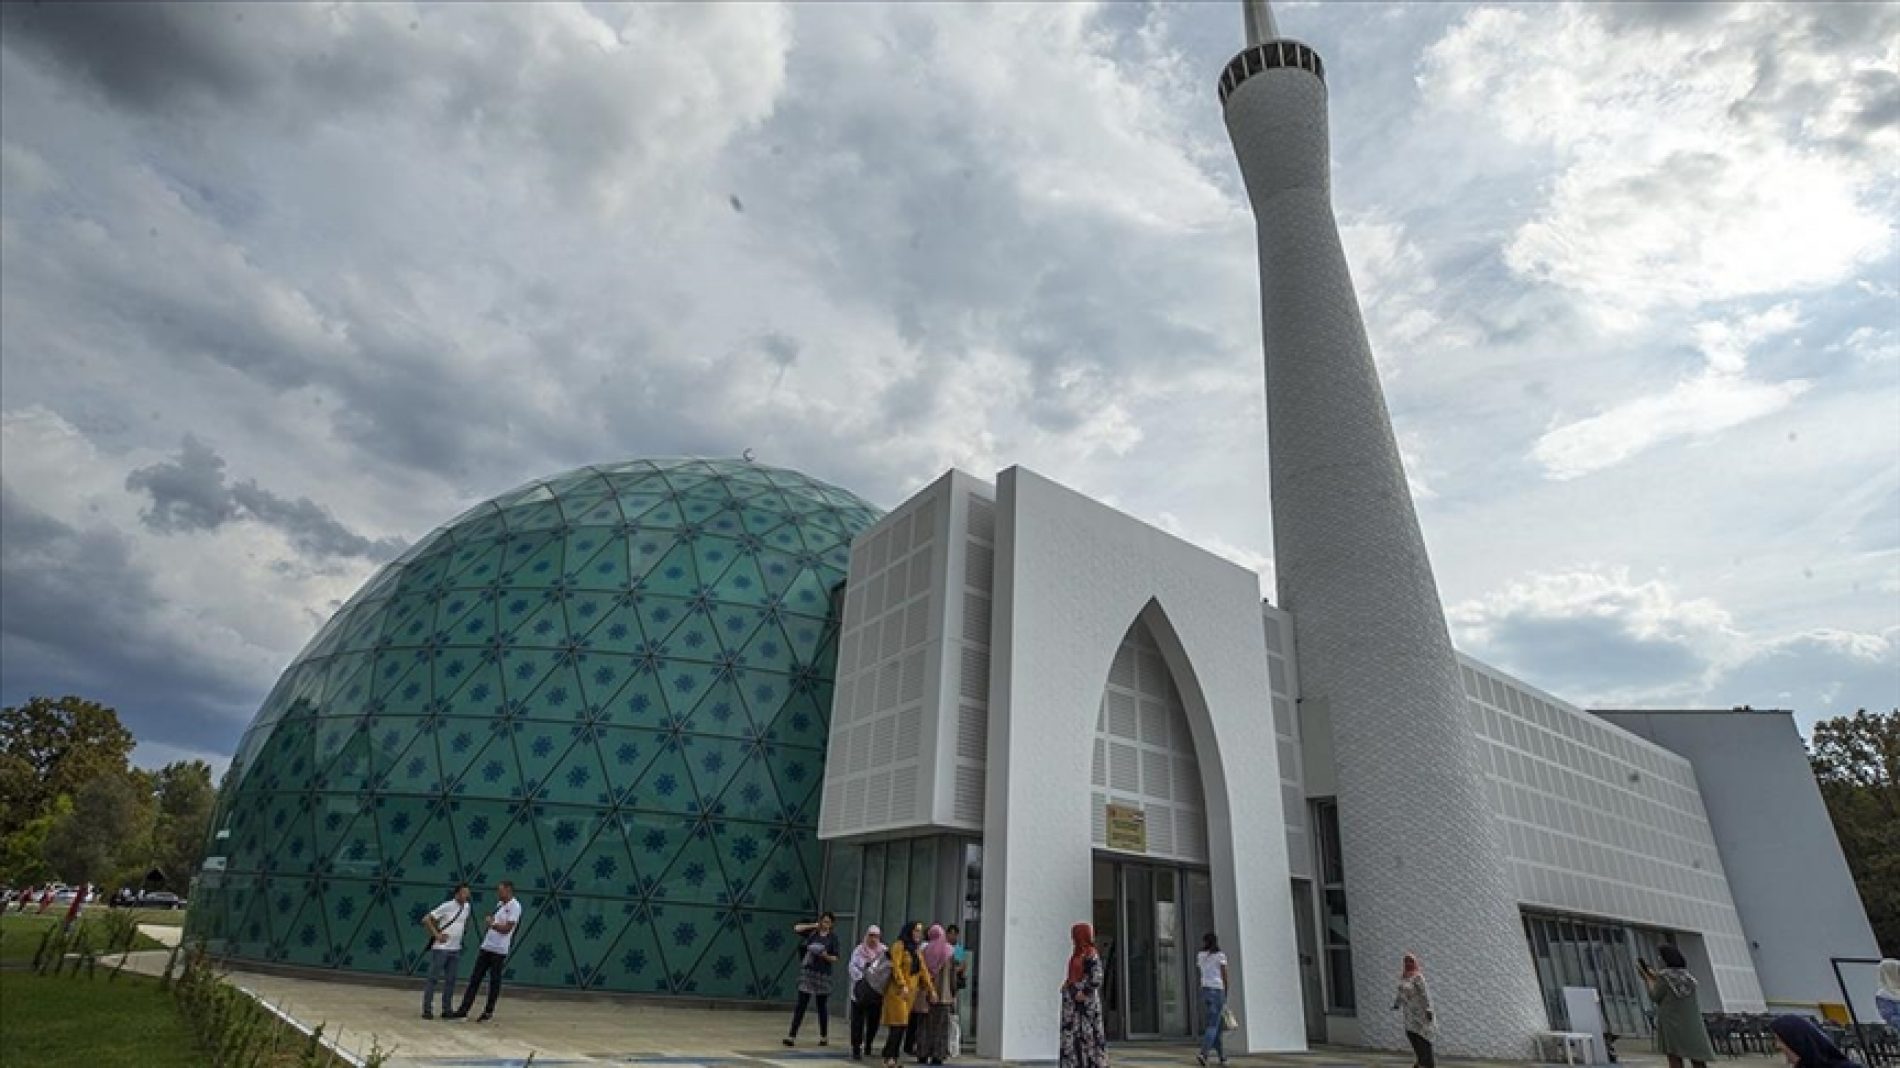 Otvoren Islamski kulturni centar u Sisku